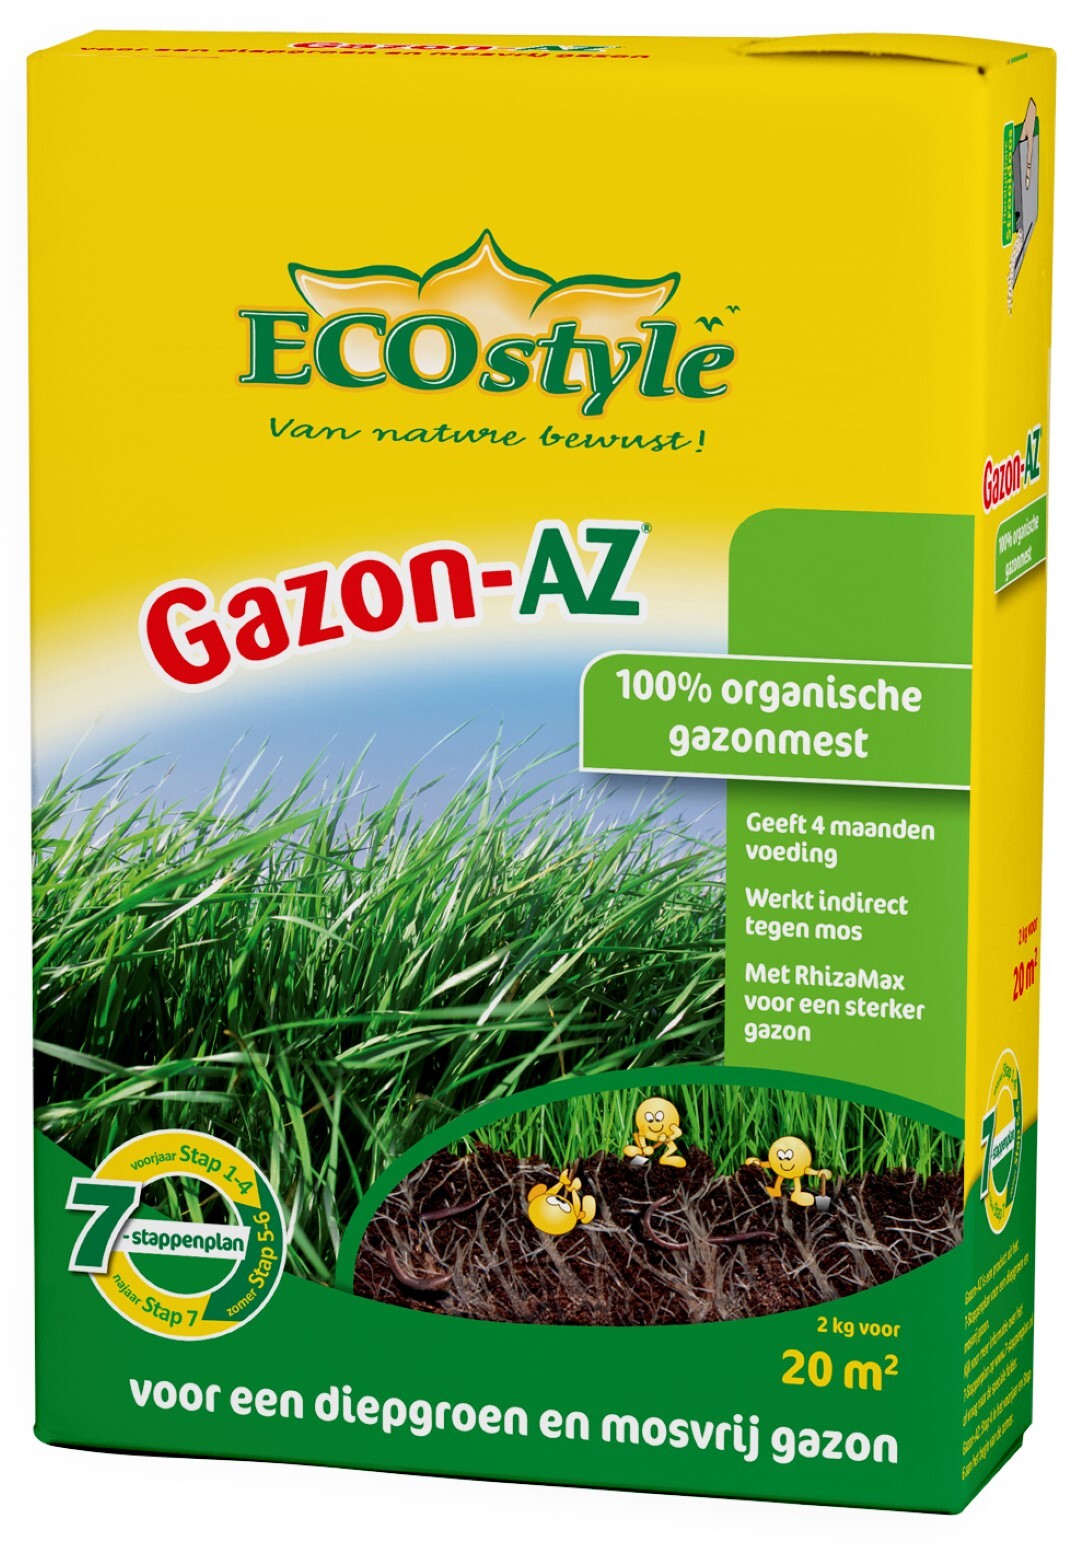 ECOSTYLE Gazon-AZ - 2 kg - gazonmeststof voor 20 m2 Voor een diepgroen mosvrij gazon